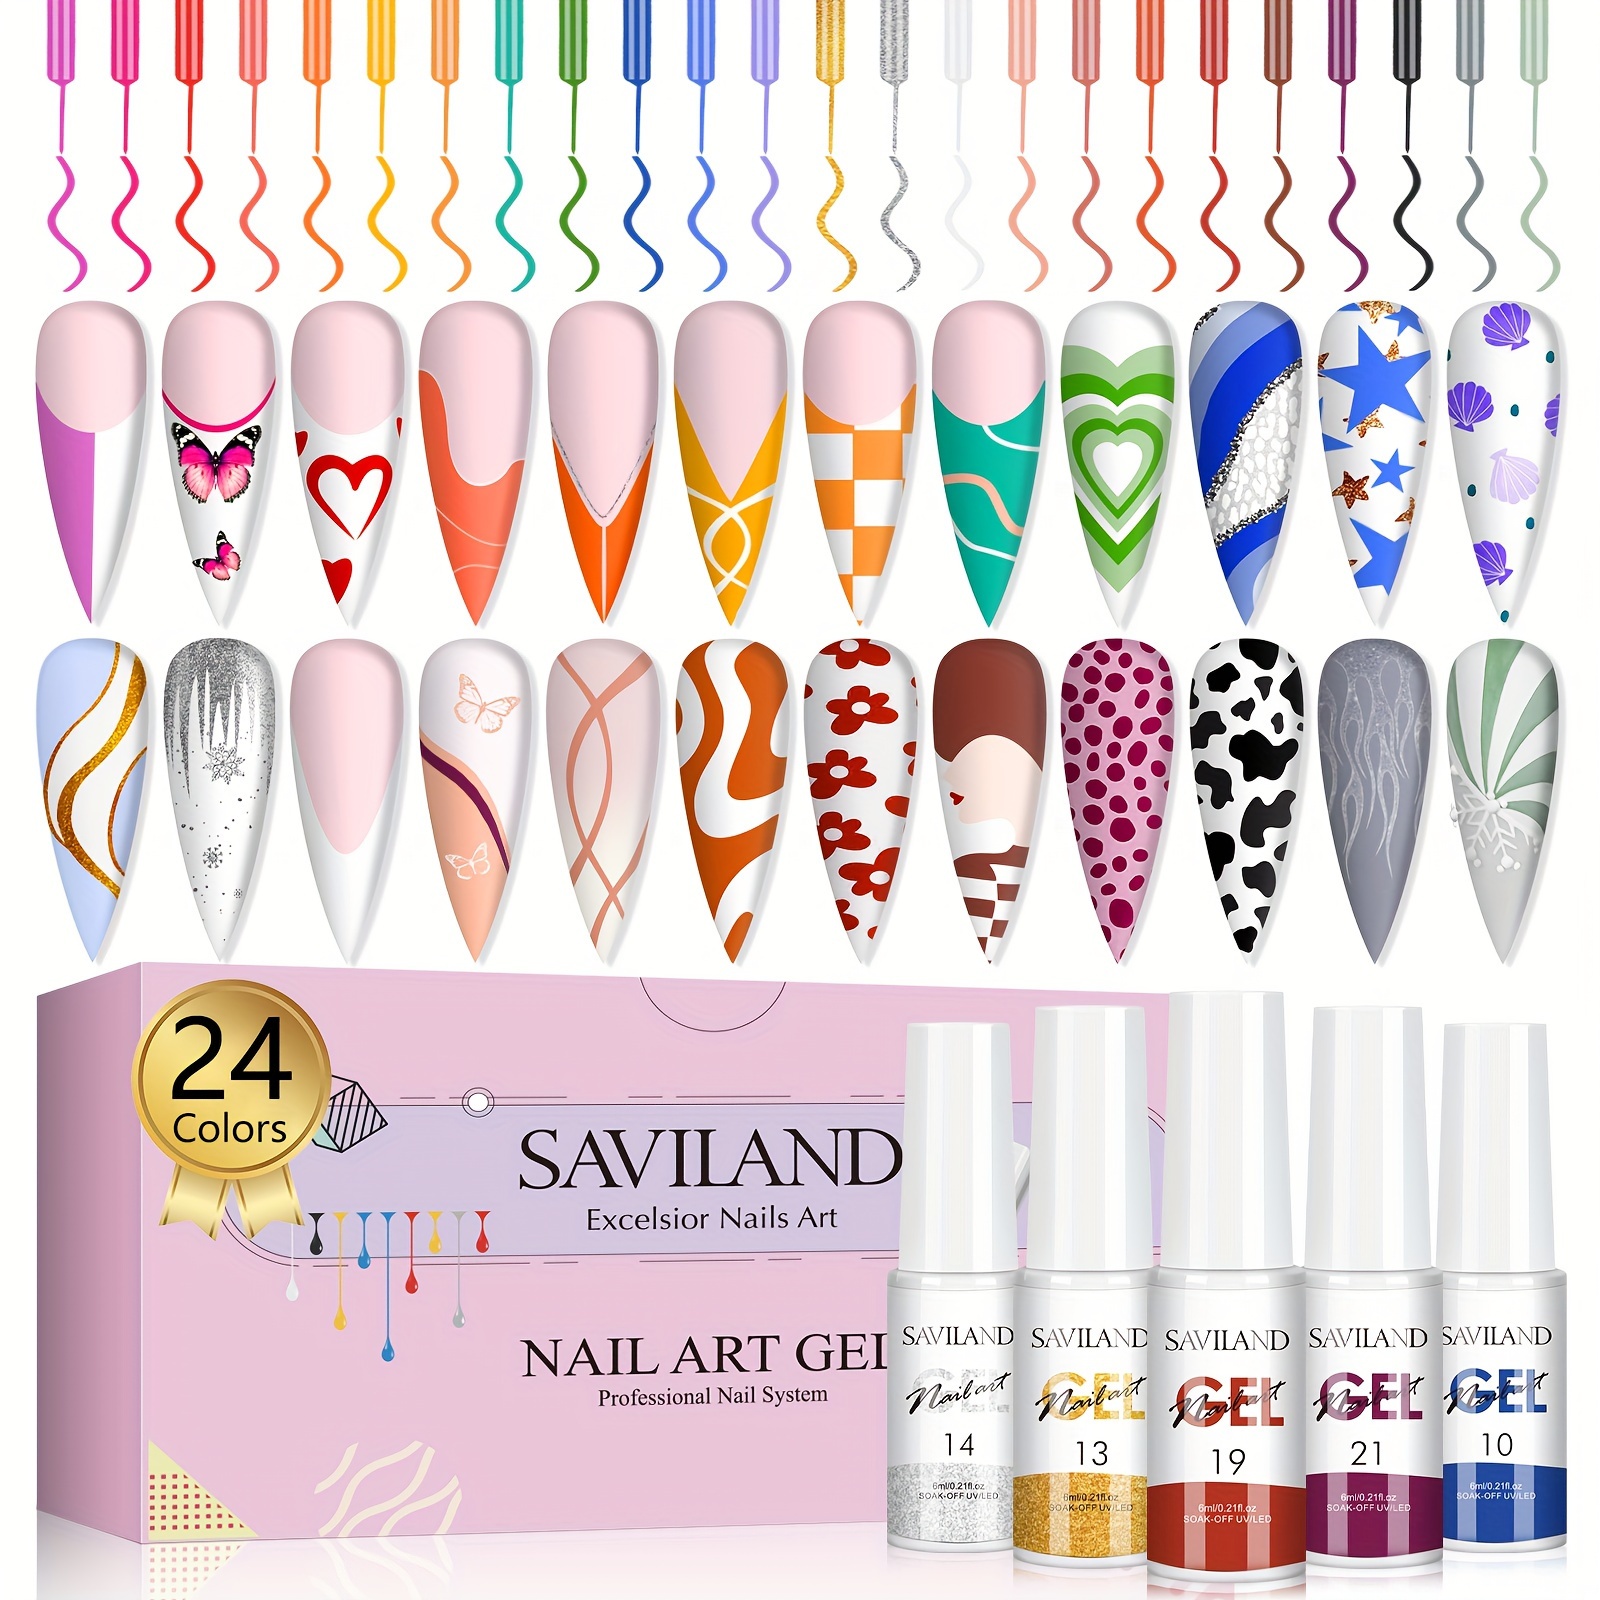 

Saviland Gel Nail Polish Gel Liner Nail Art Set - 24 Colors Nail Art Polish With Thin Brush For Line Pulling, Gel Paint For Nails Art, Gel Nail Art Polish And Gifts For Women